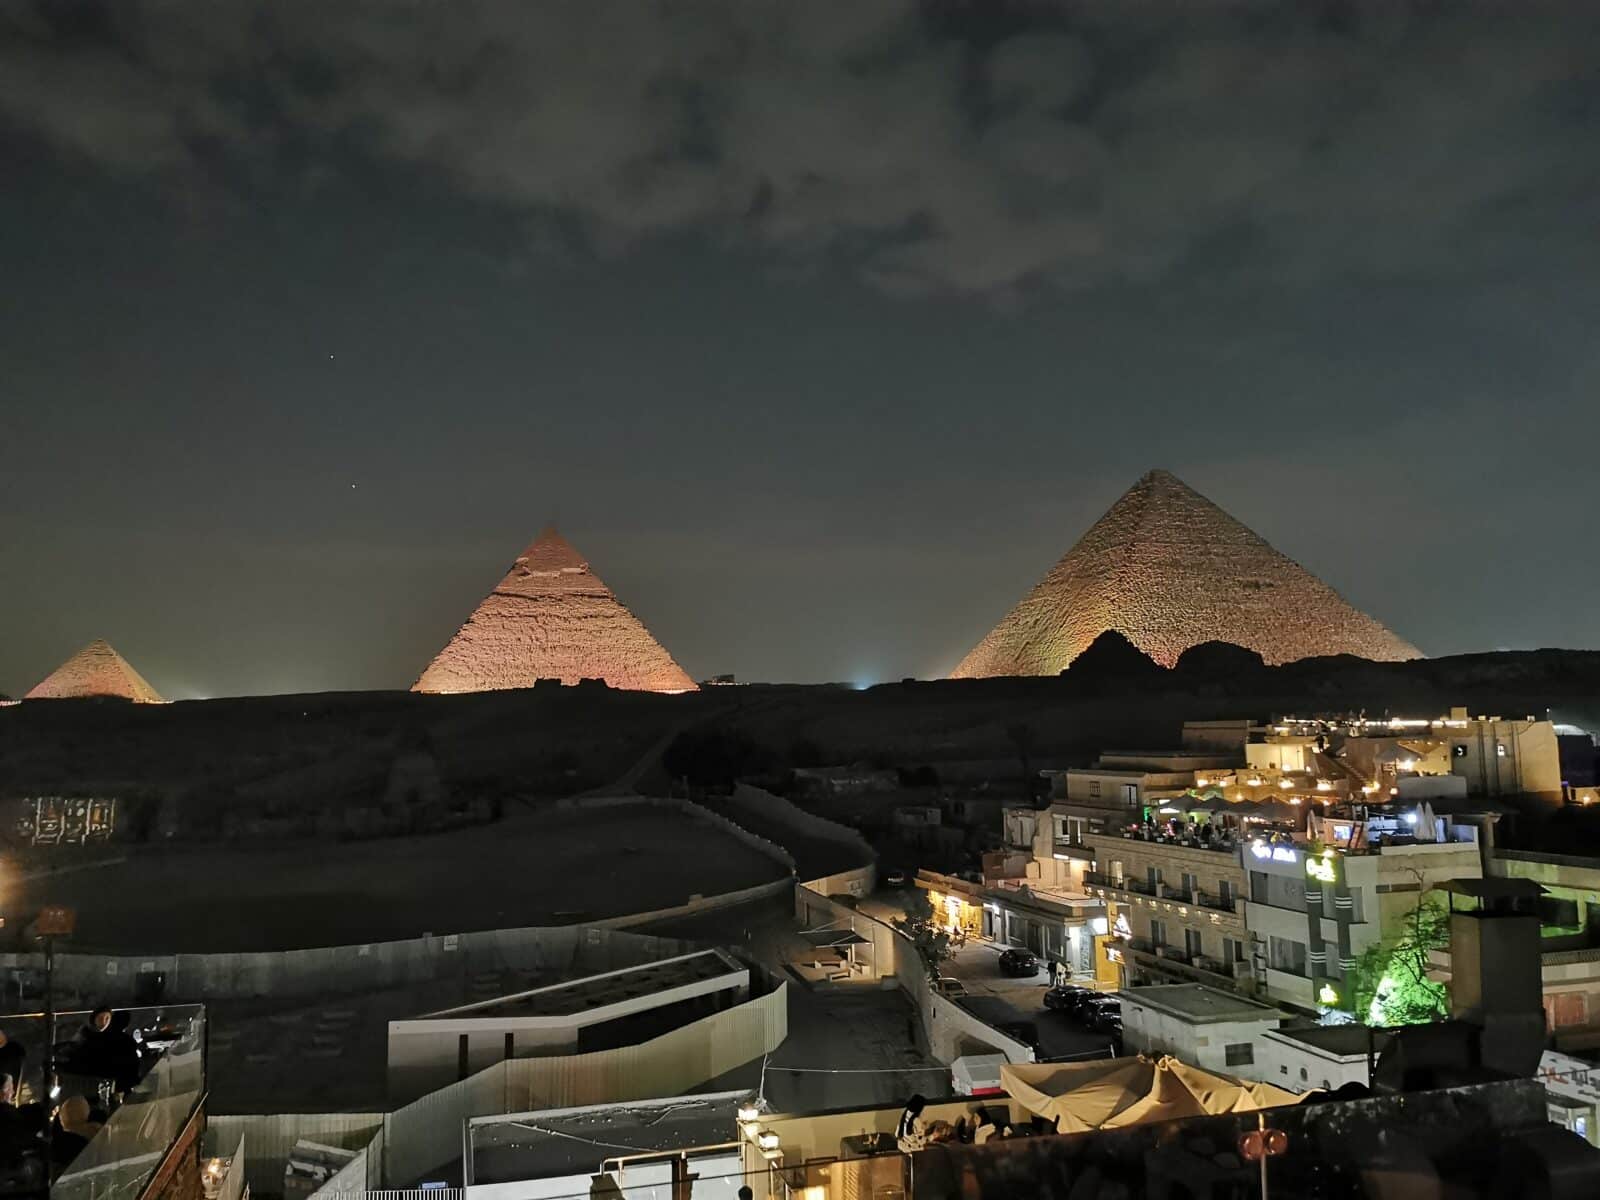 La piana di Giza nel suggestivo spettacolo di luci notturne